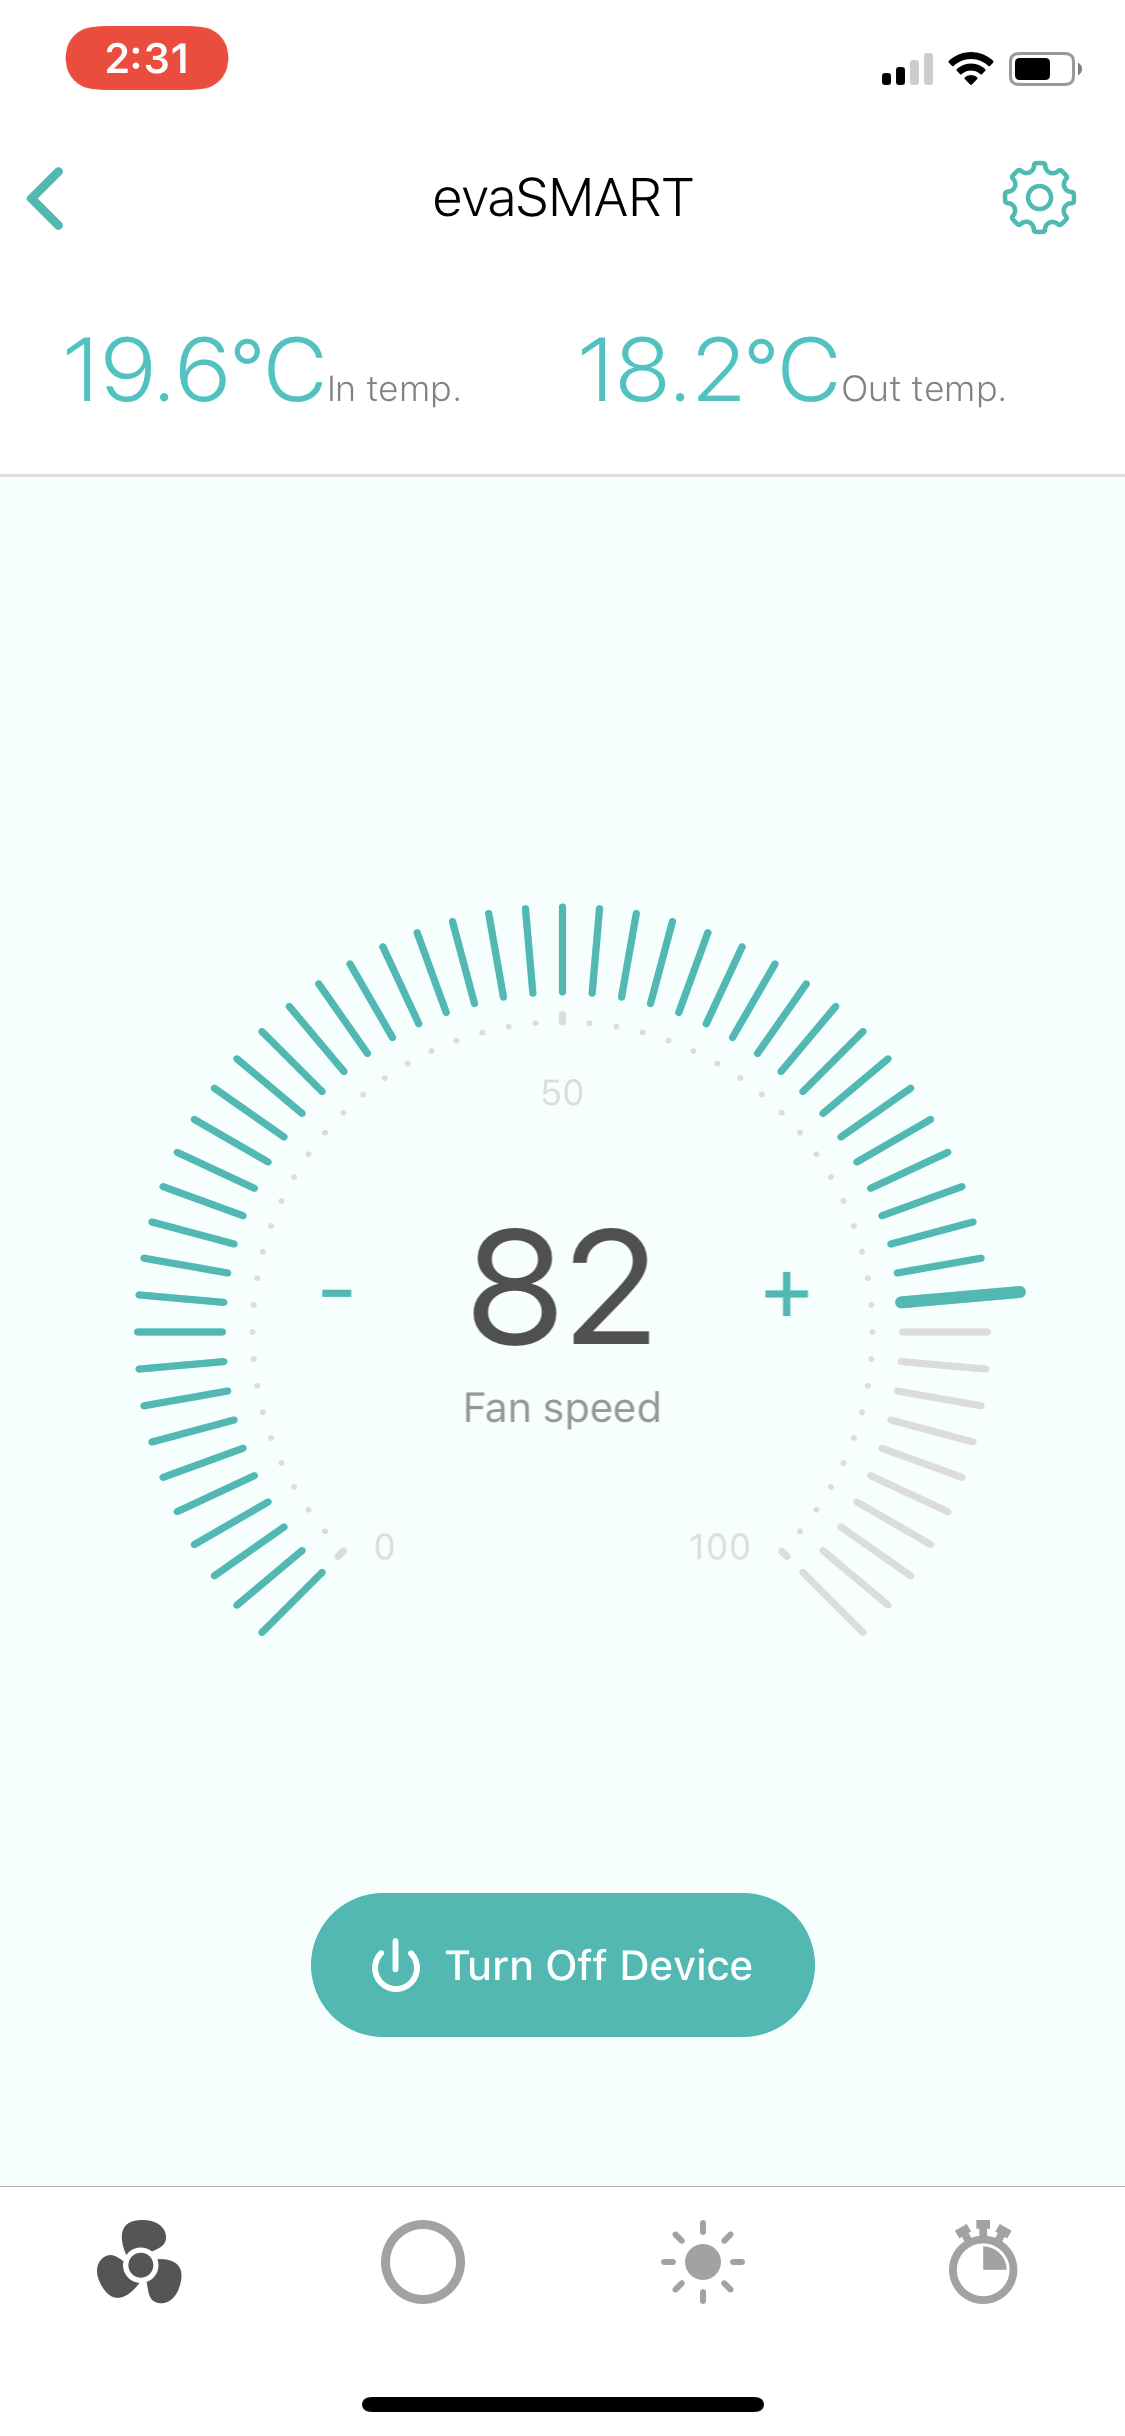 evaSMART app fan speed